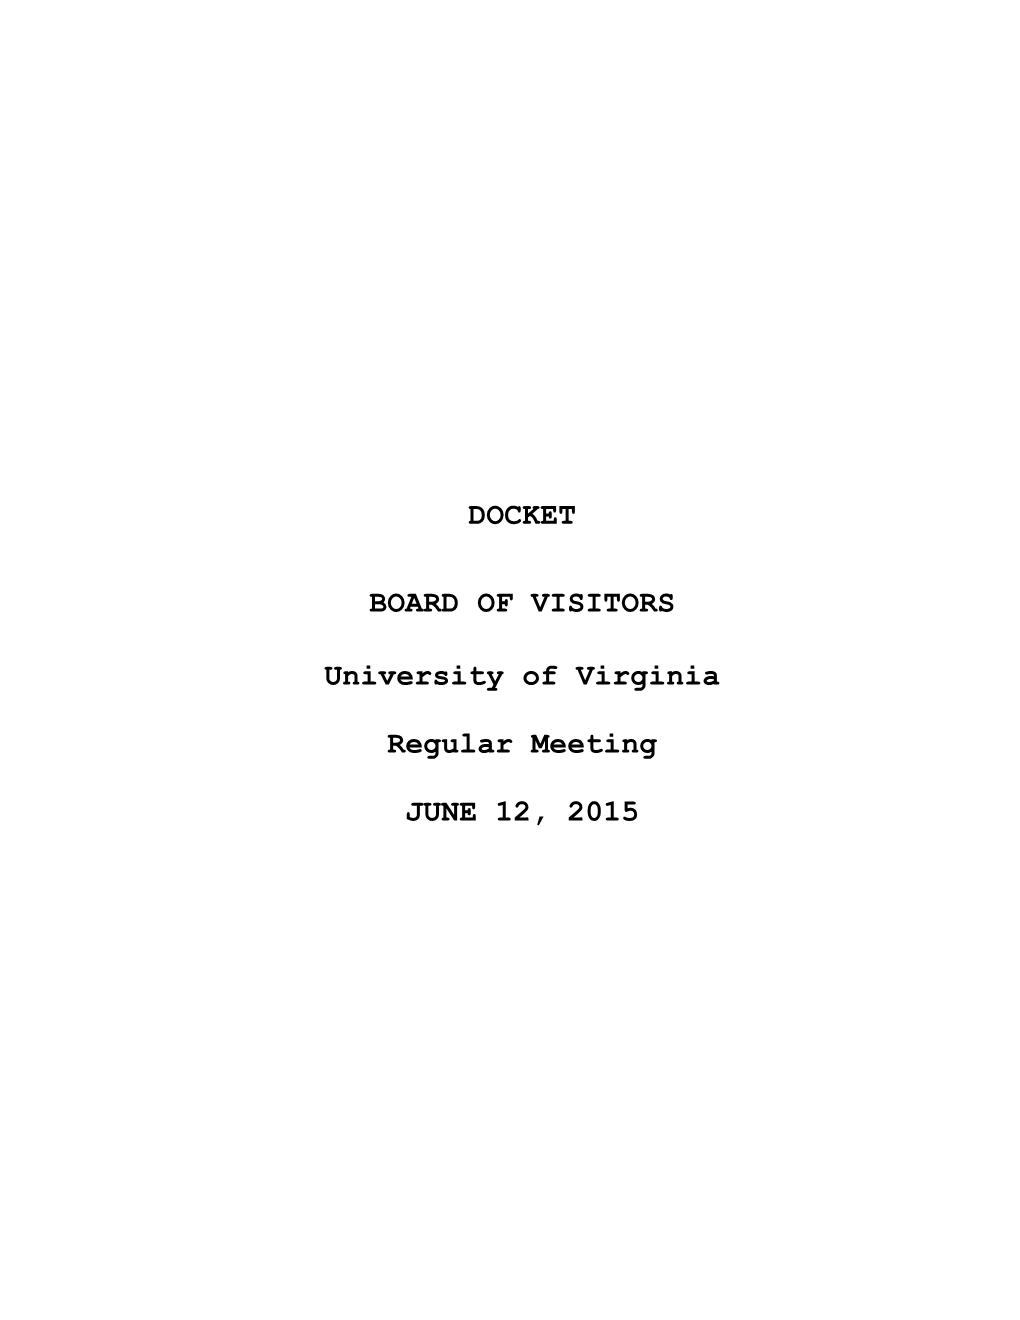 DOCKET BOARD of VISITORS University of Virginia Regular